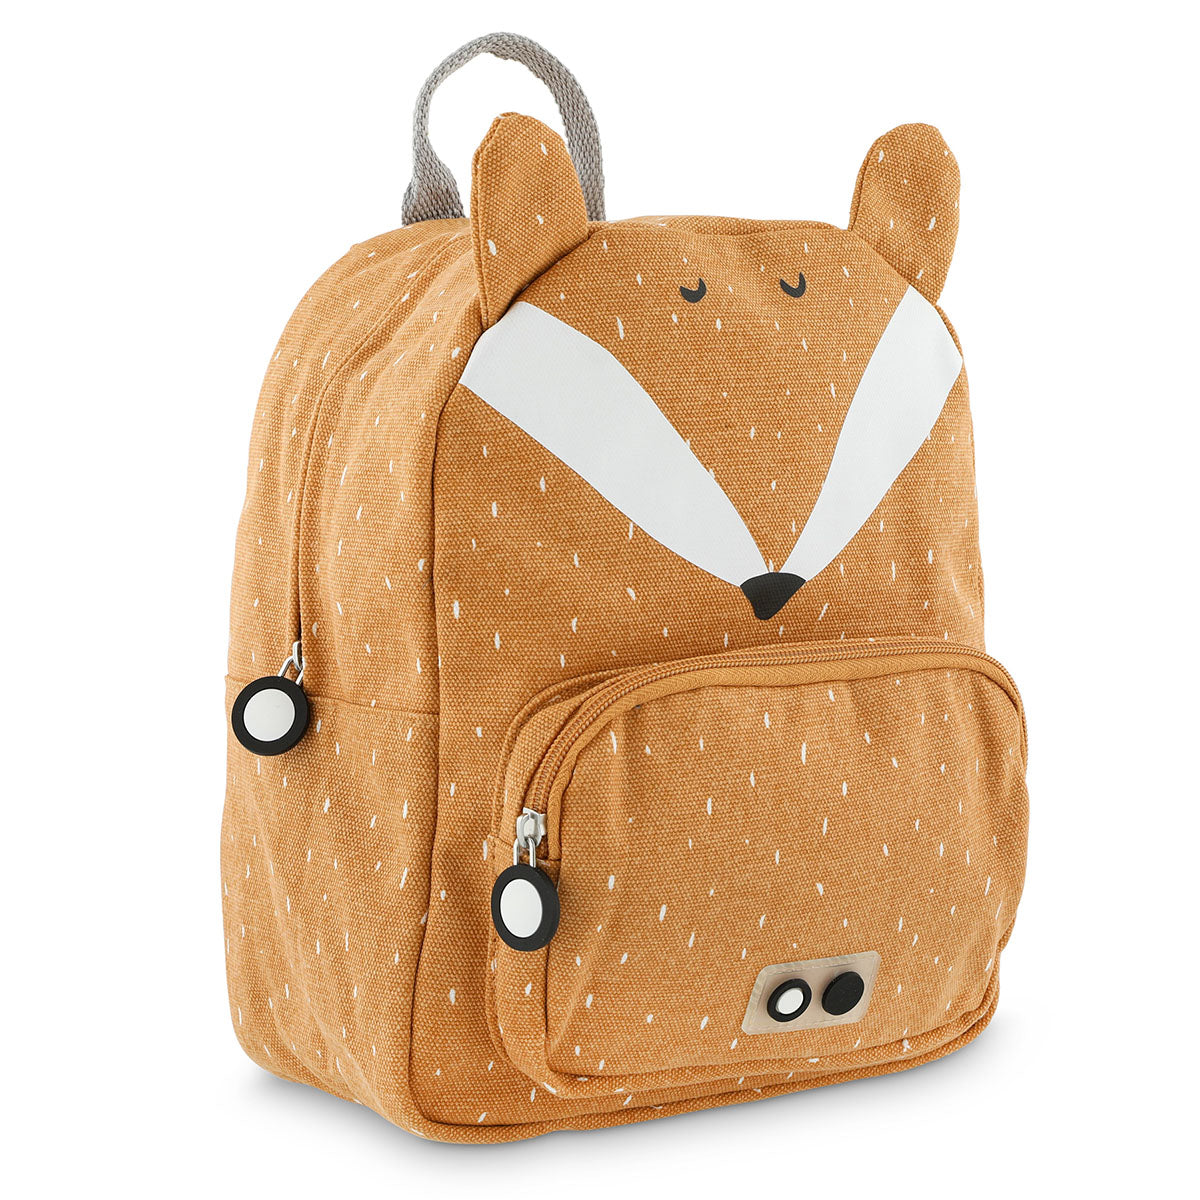 Met de Trixie Mr. Fox rugzak ben je klaar voor avontuur! In deze oranje schooltas kan je al je spulletjes kwijt voor een dagje weg. De oranje rugzak komt in de vorm van een vrolijk vosje. VanZus.